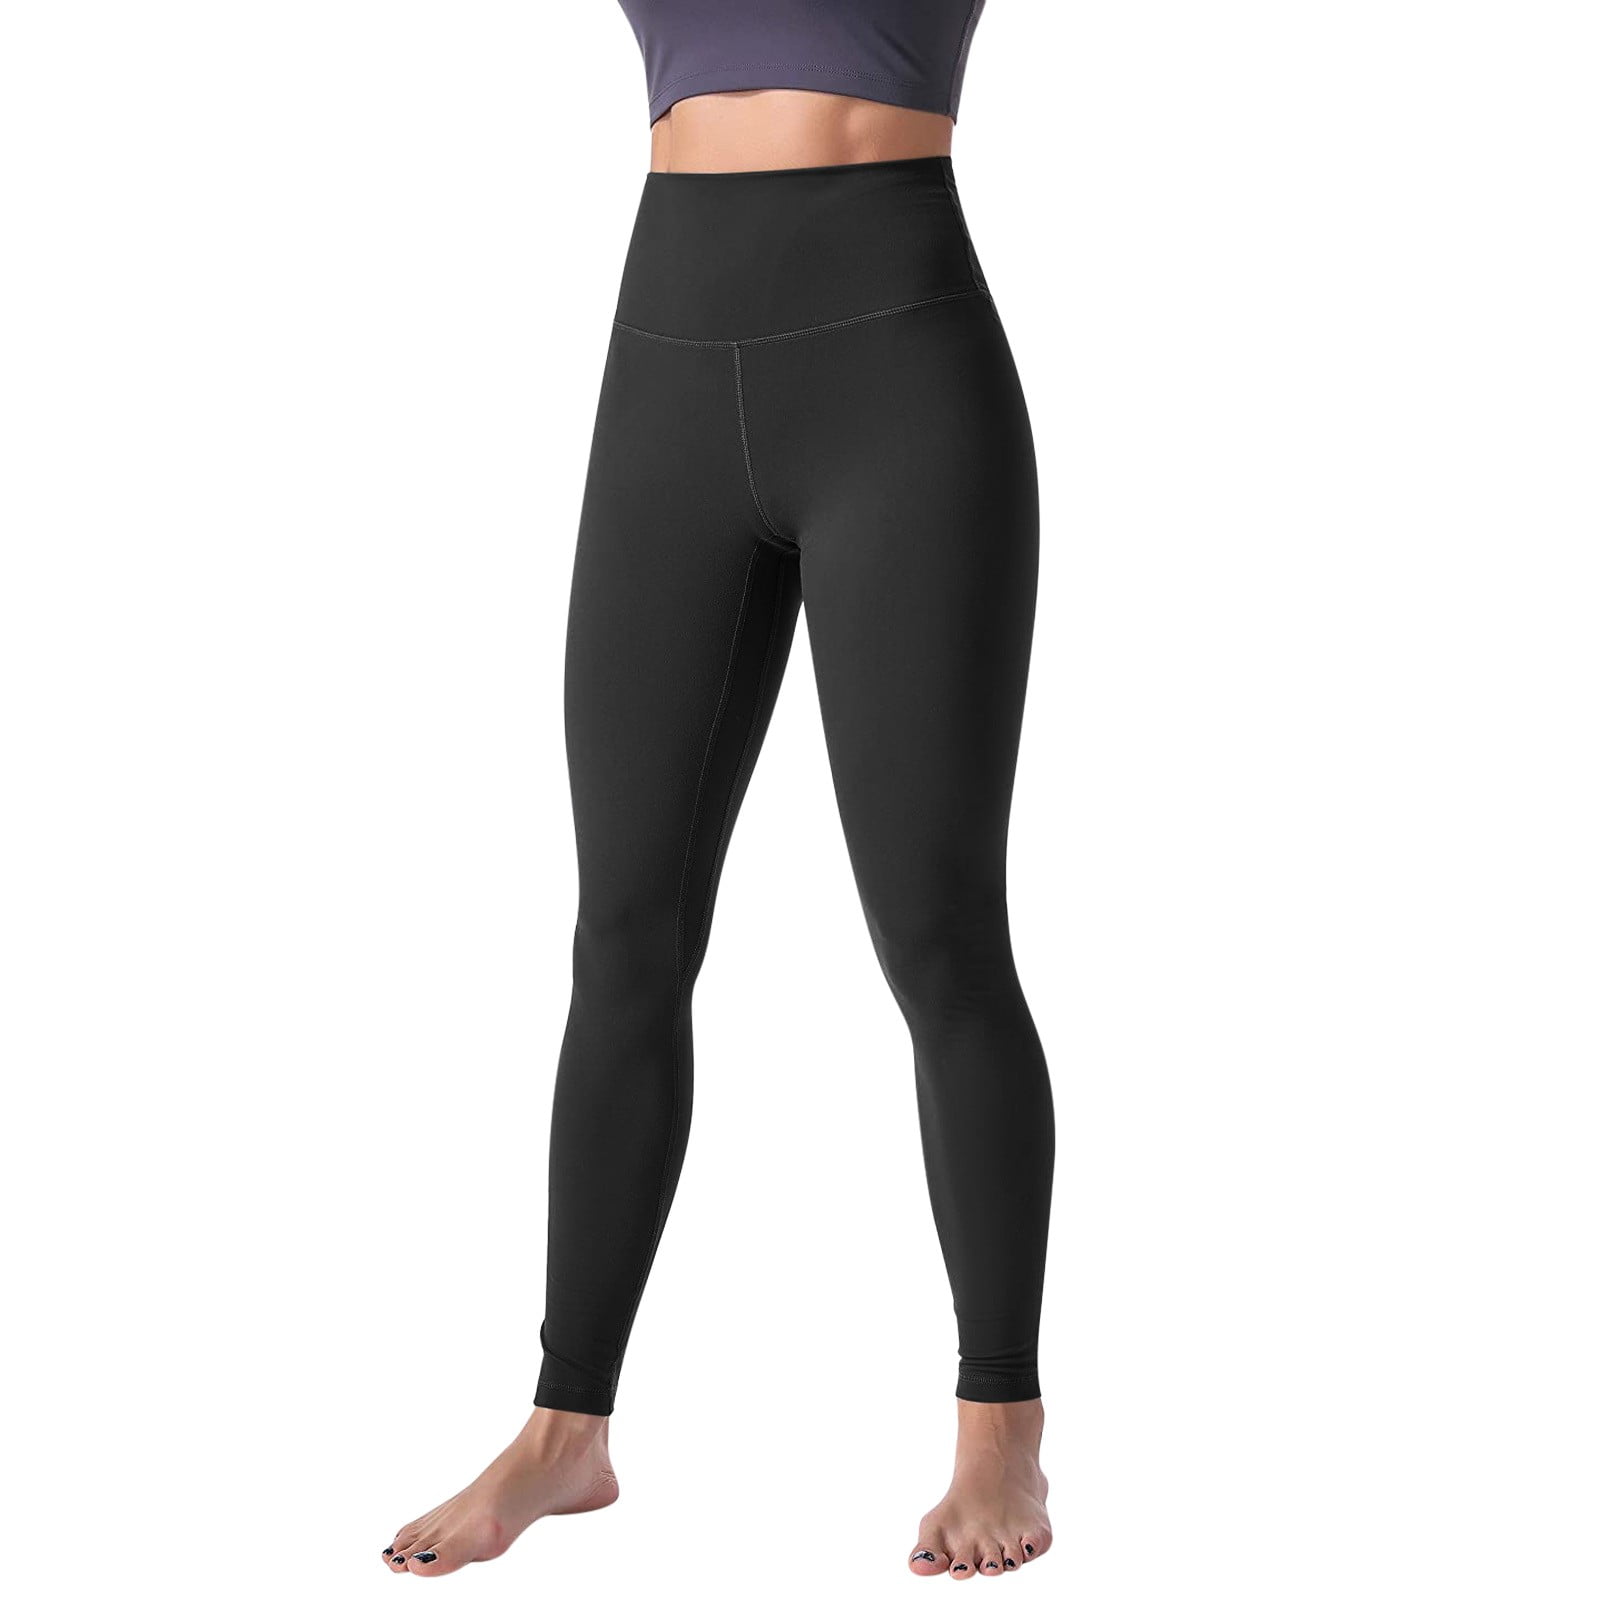 AERIE Ladies Size S Black Athletic/Dance/Yoga Pants Side Leg